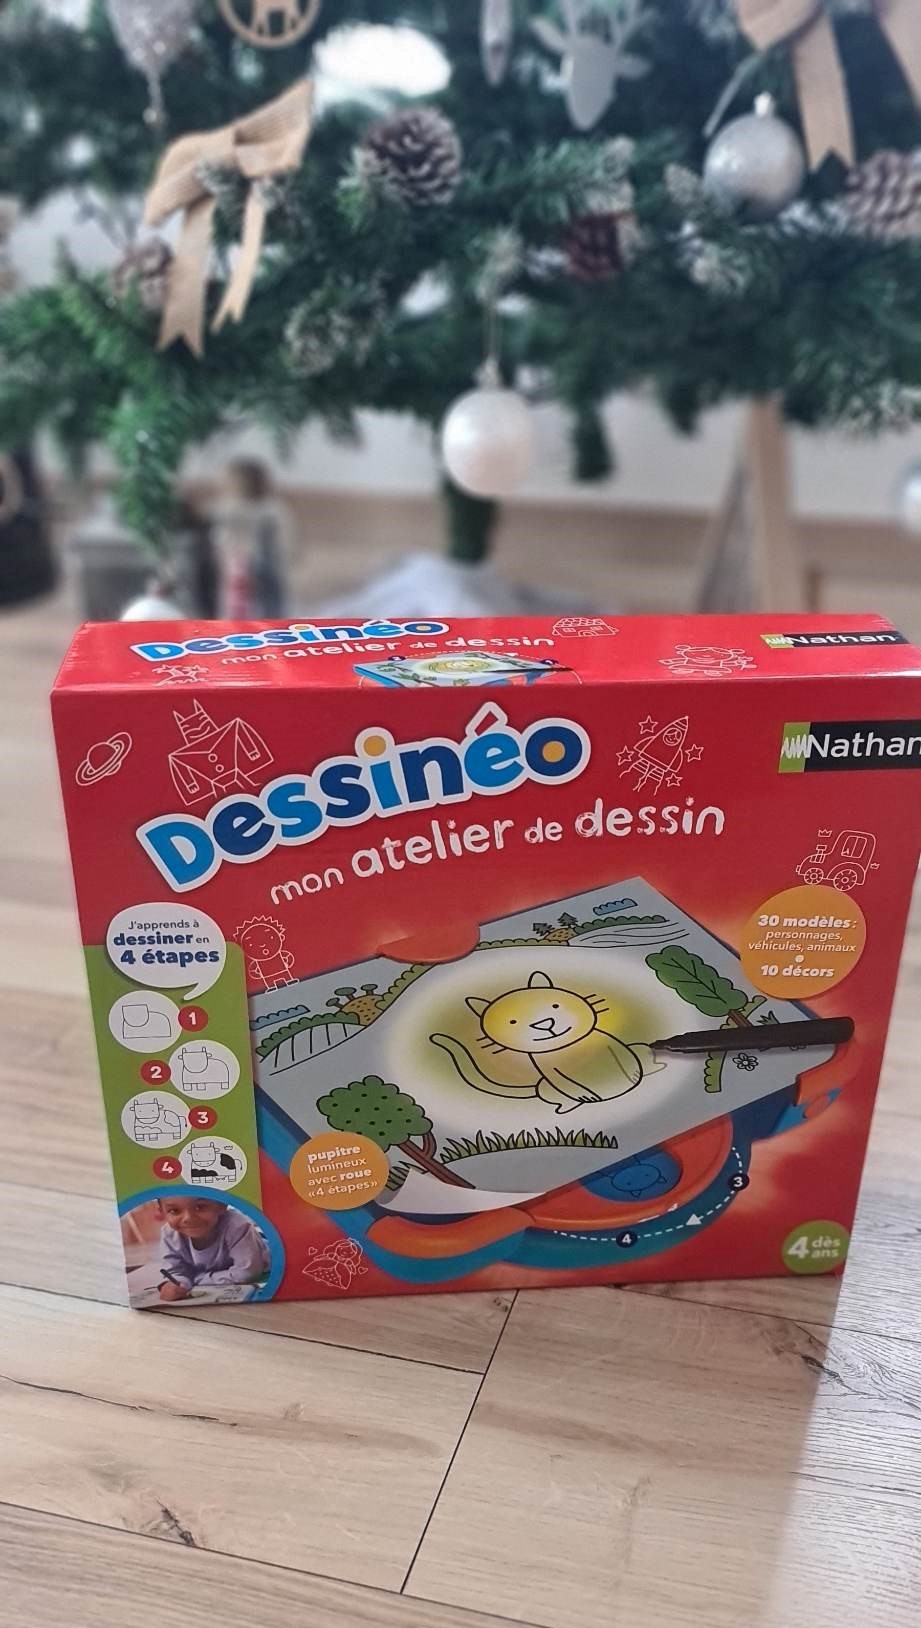 Le Dessineo de la marque Nathan est un jouet qui permet d'apprendre le dessin aux enfants de 3 ans et plus.